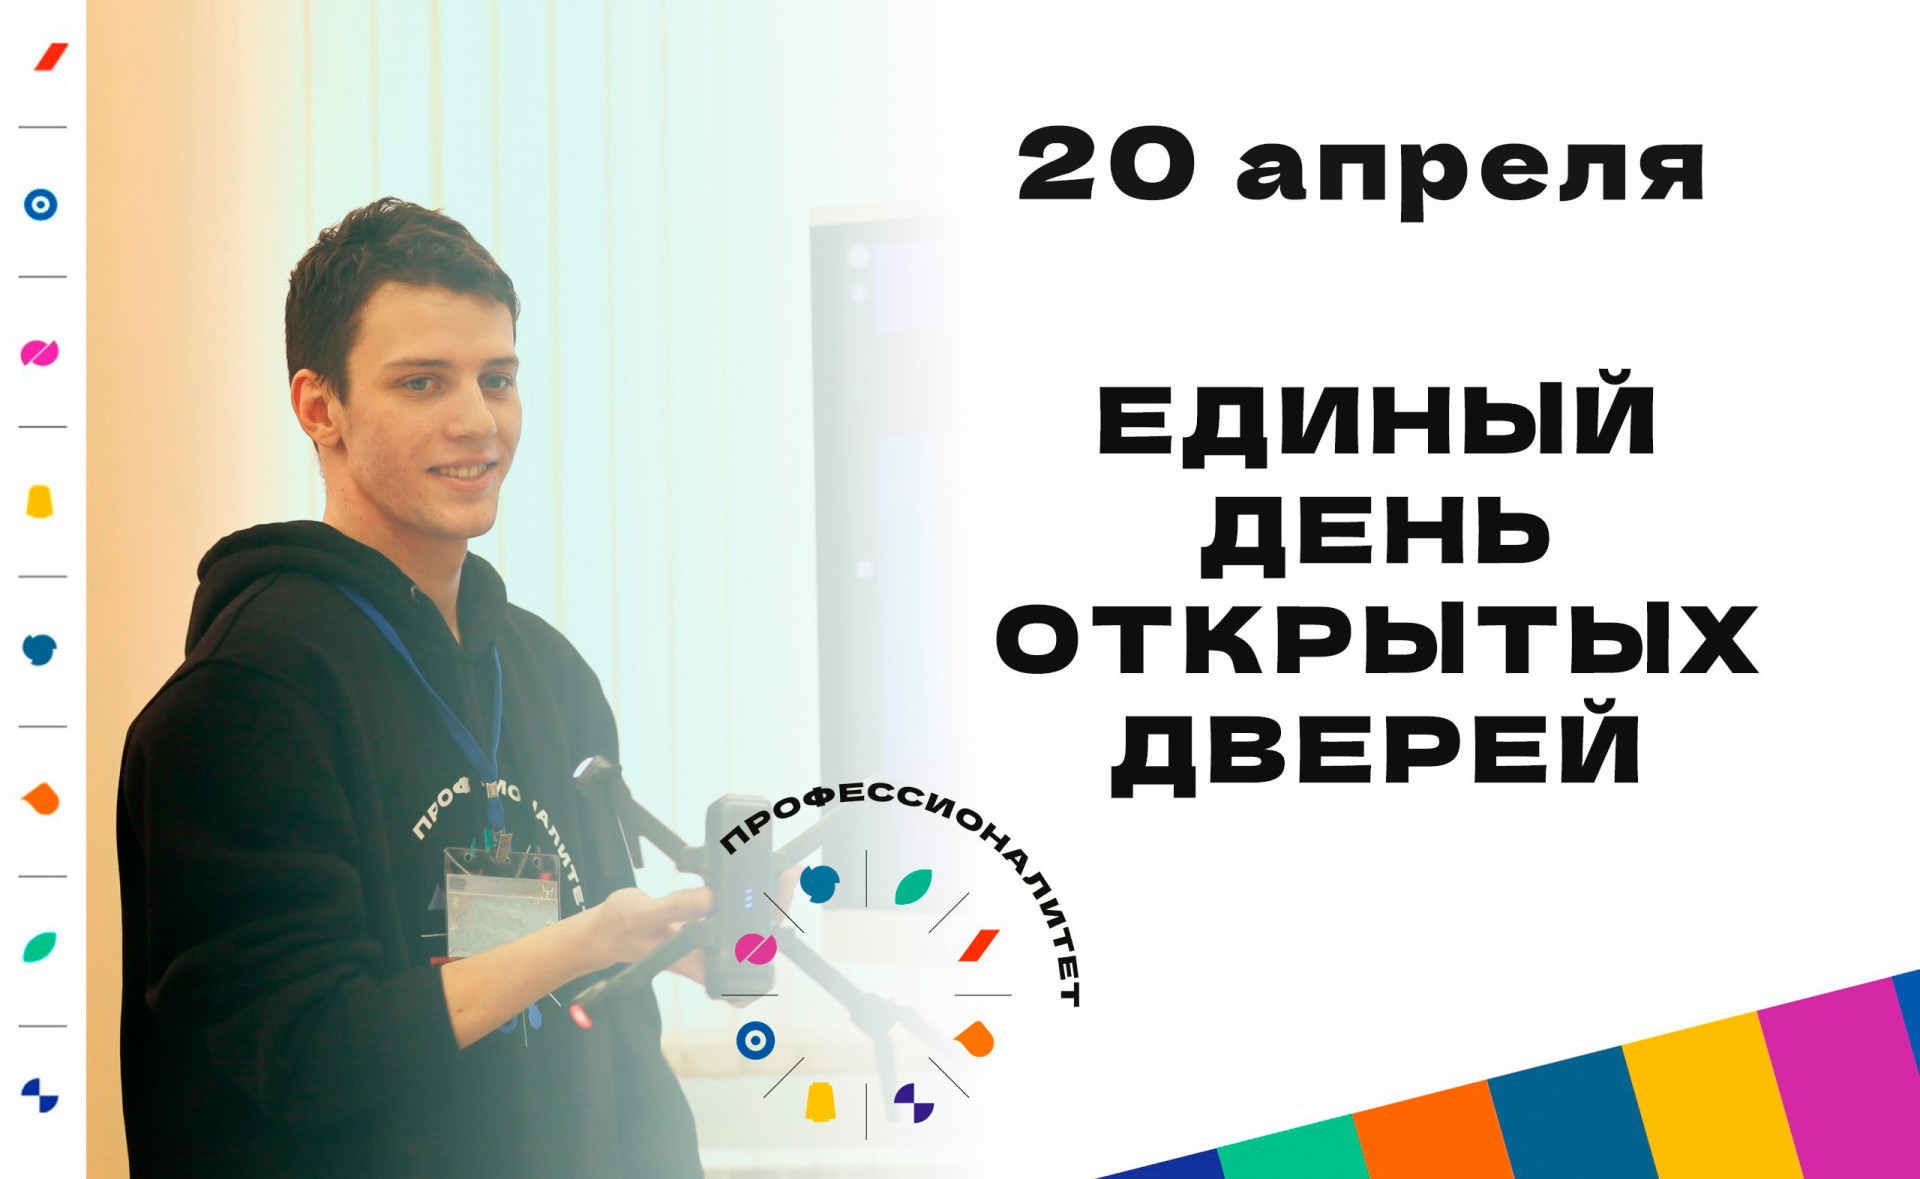 В Тульской области пройдет Единый день открытых дверей проекта "Профессионалитет"